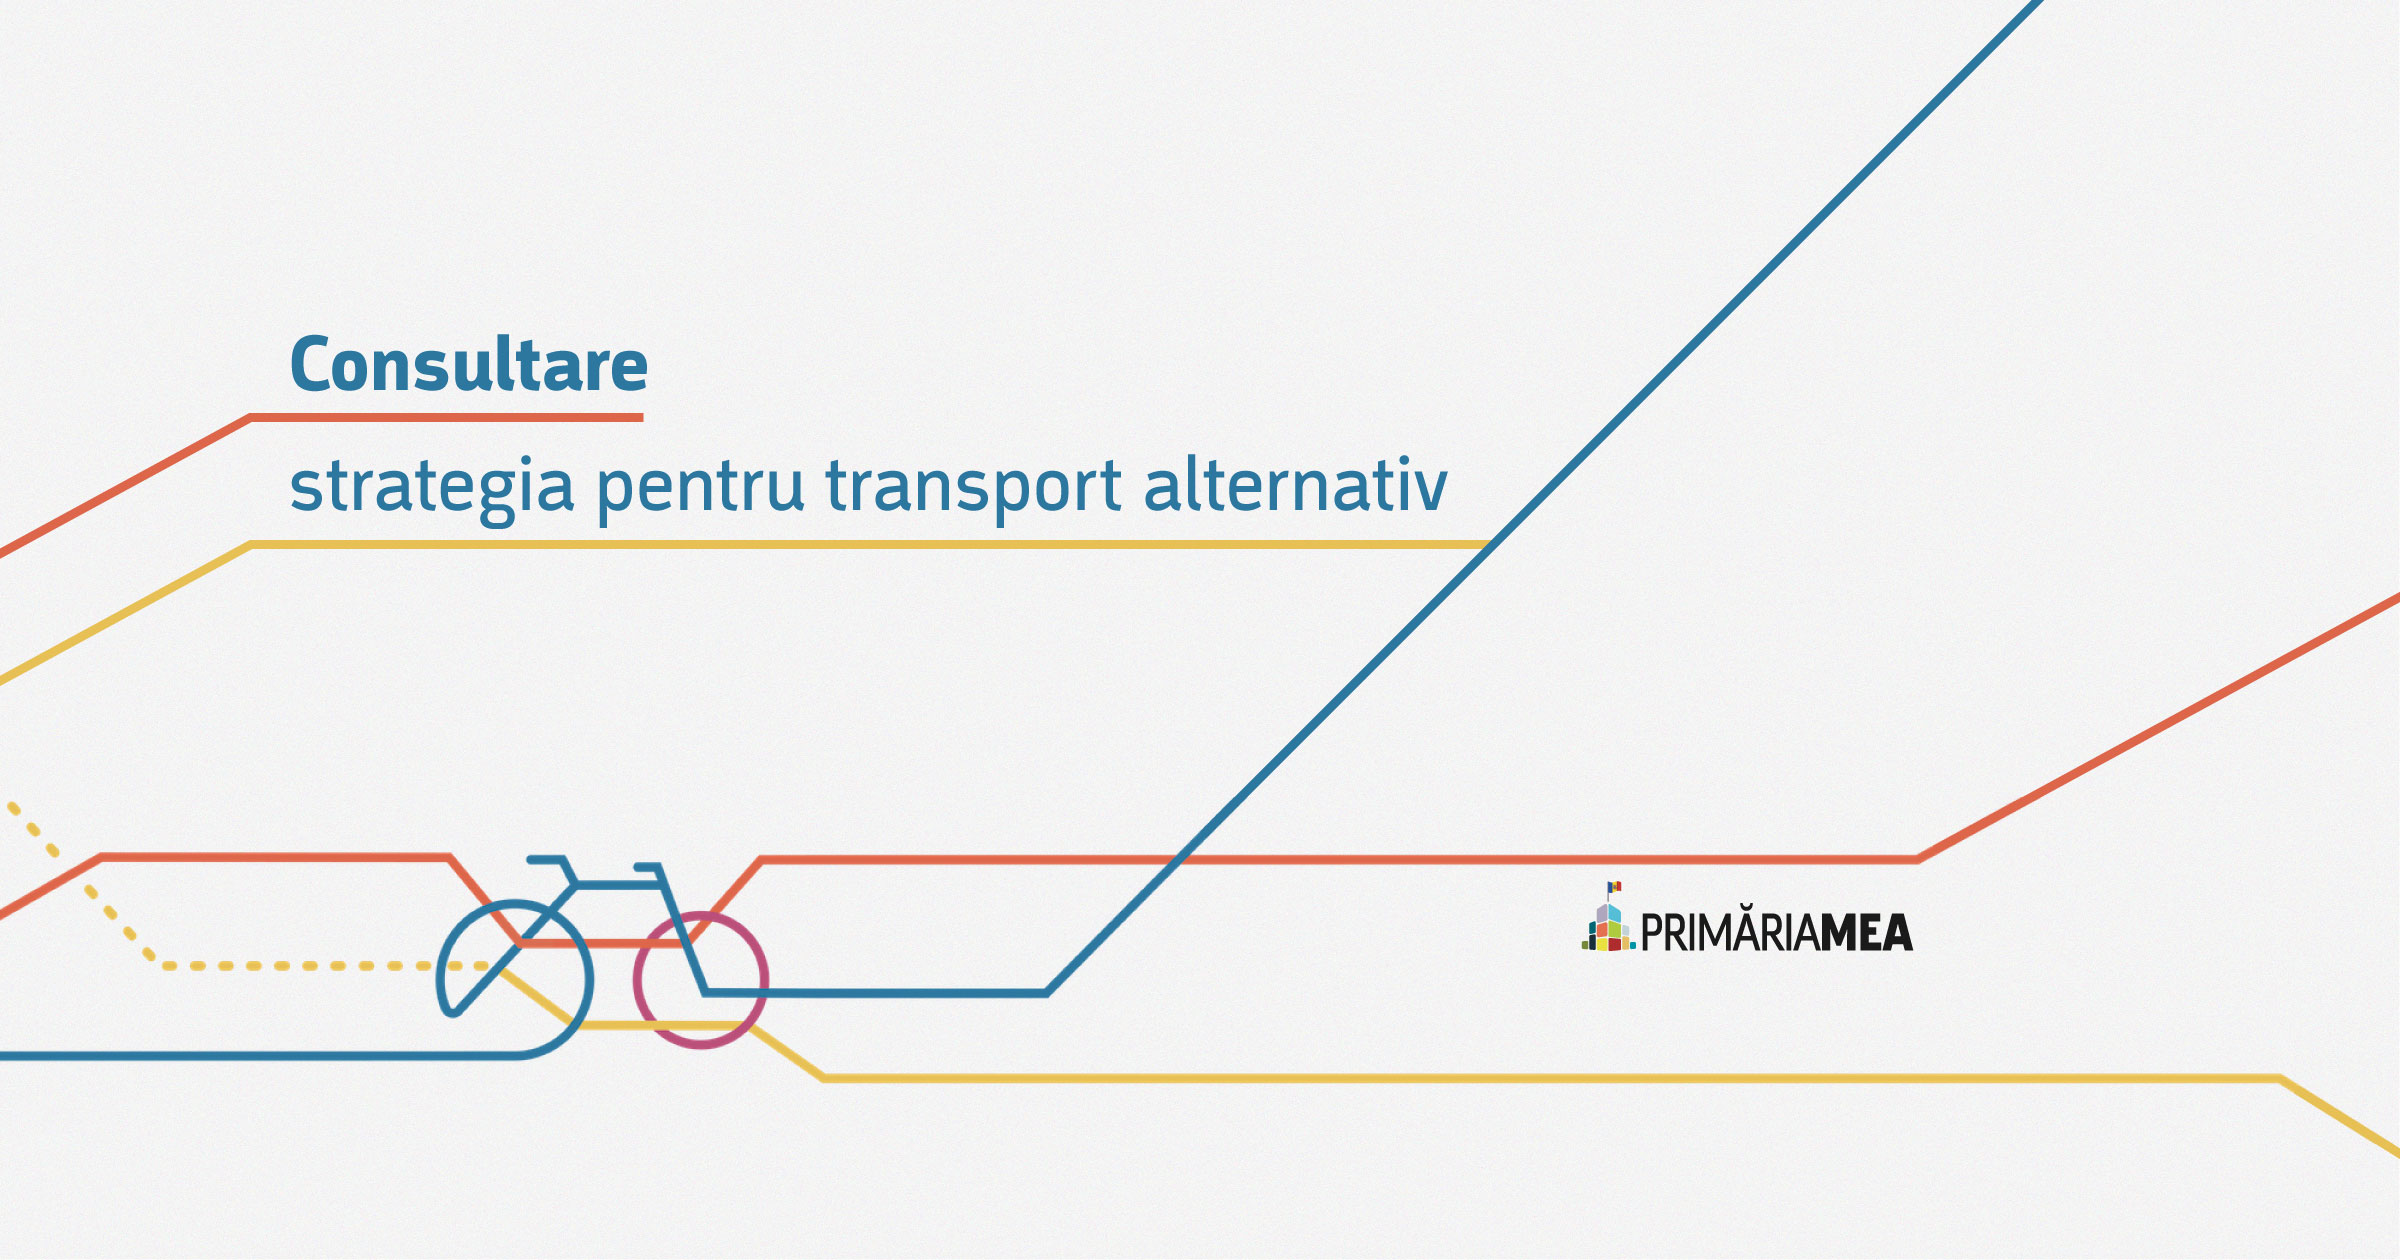 Cum își propune primăria să dezvolte transportul alternativ în Chișinău? Image